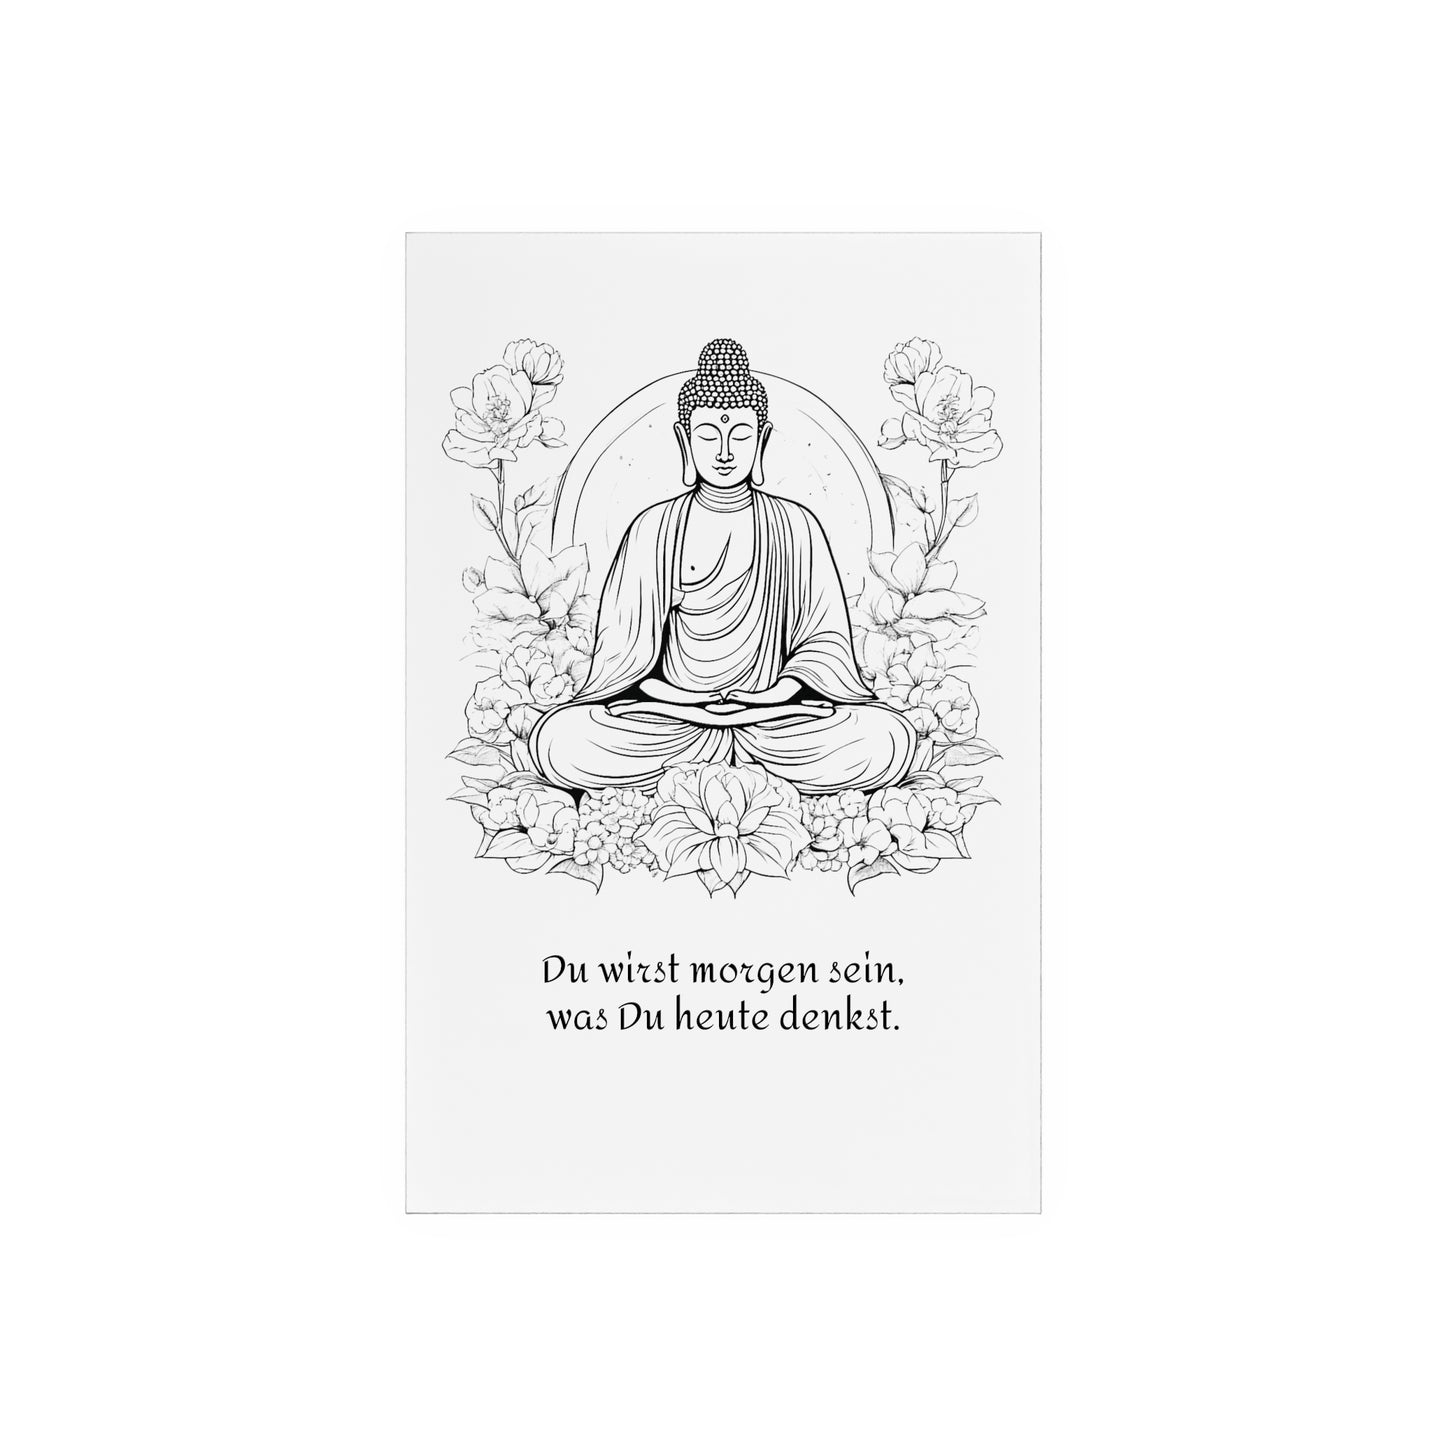 Acrylbild Sinnspruch Buddha "Gedanken"